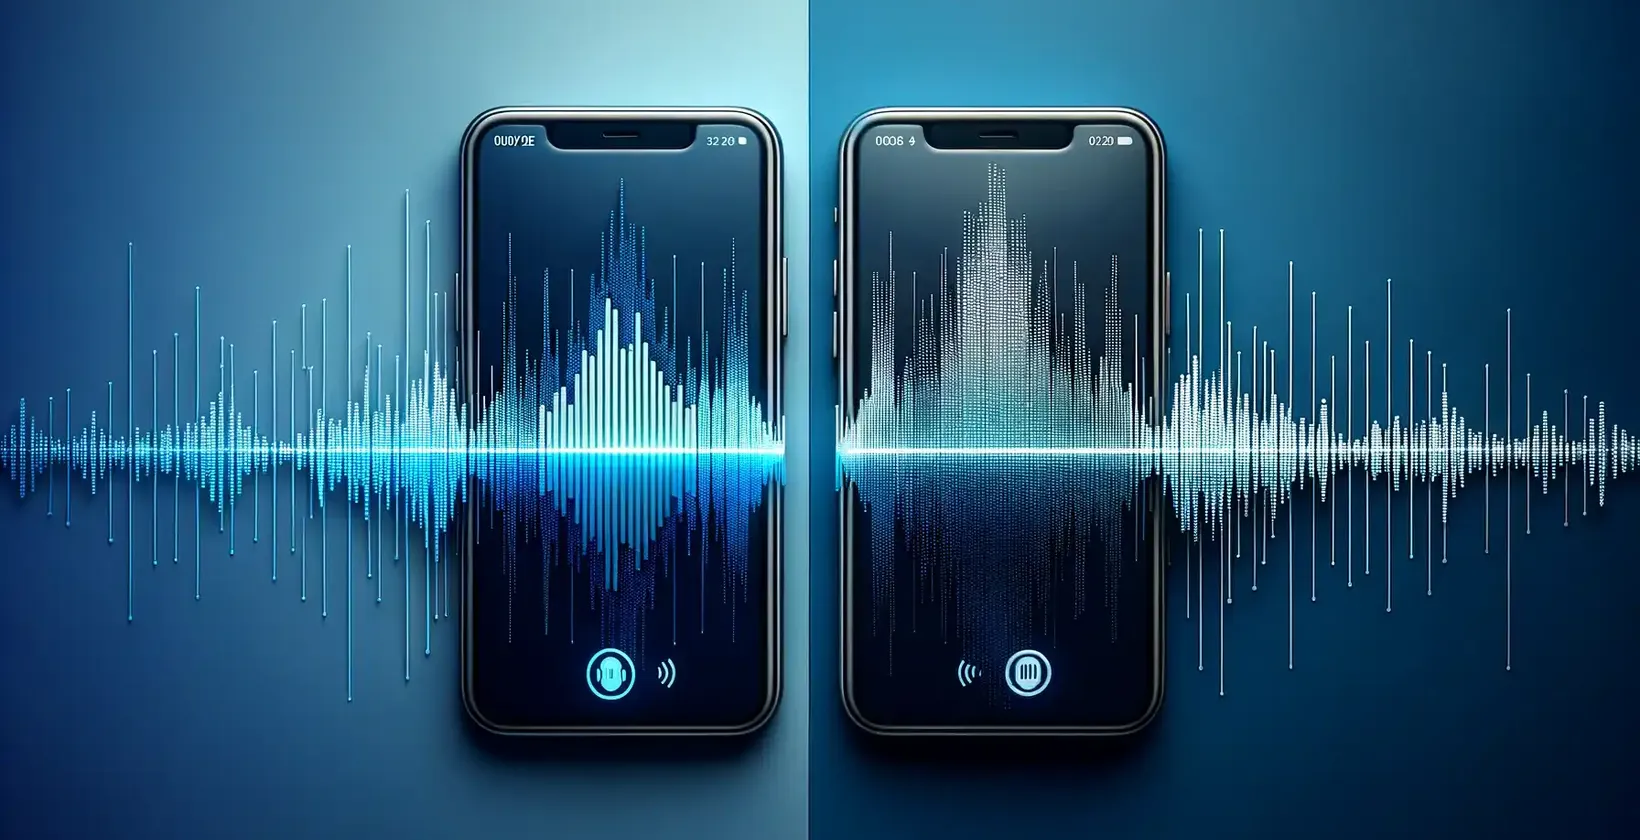 Du modernūs išmanieji telefonai šalia vienas kito gradientiniame mėlyname fone